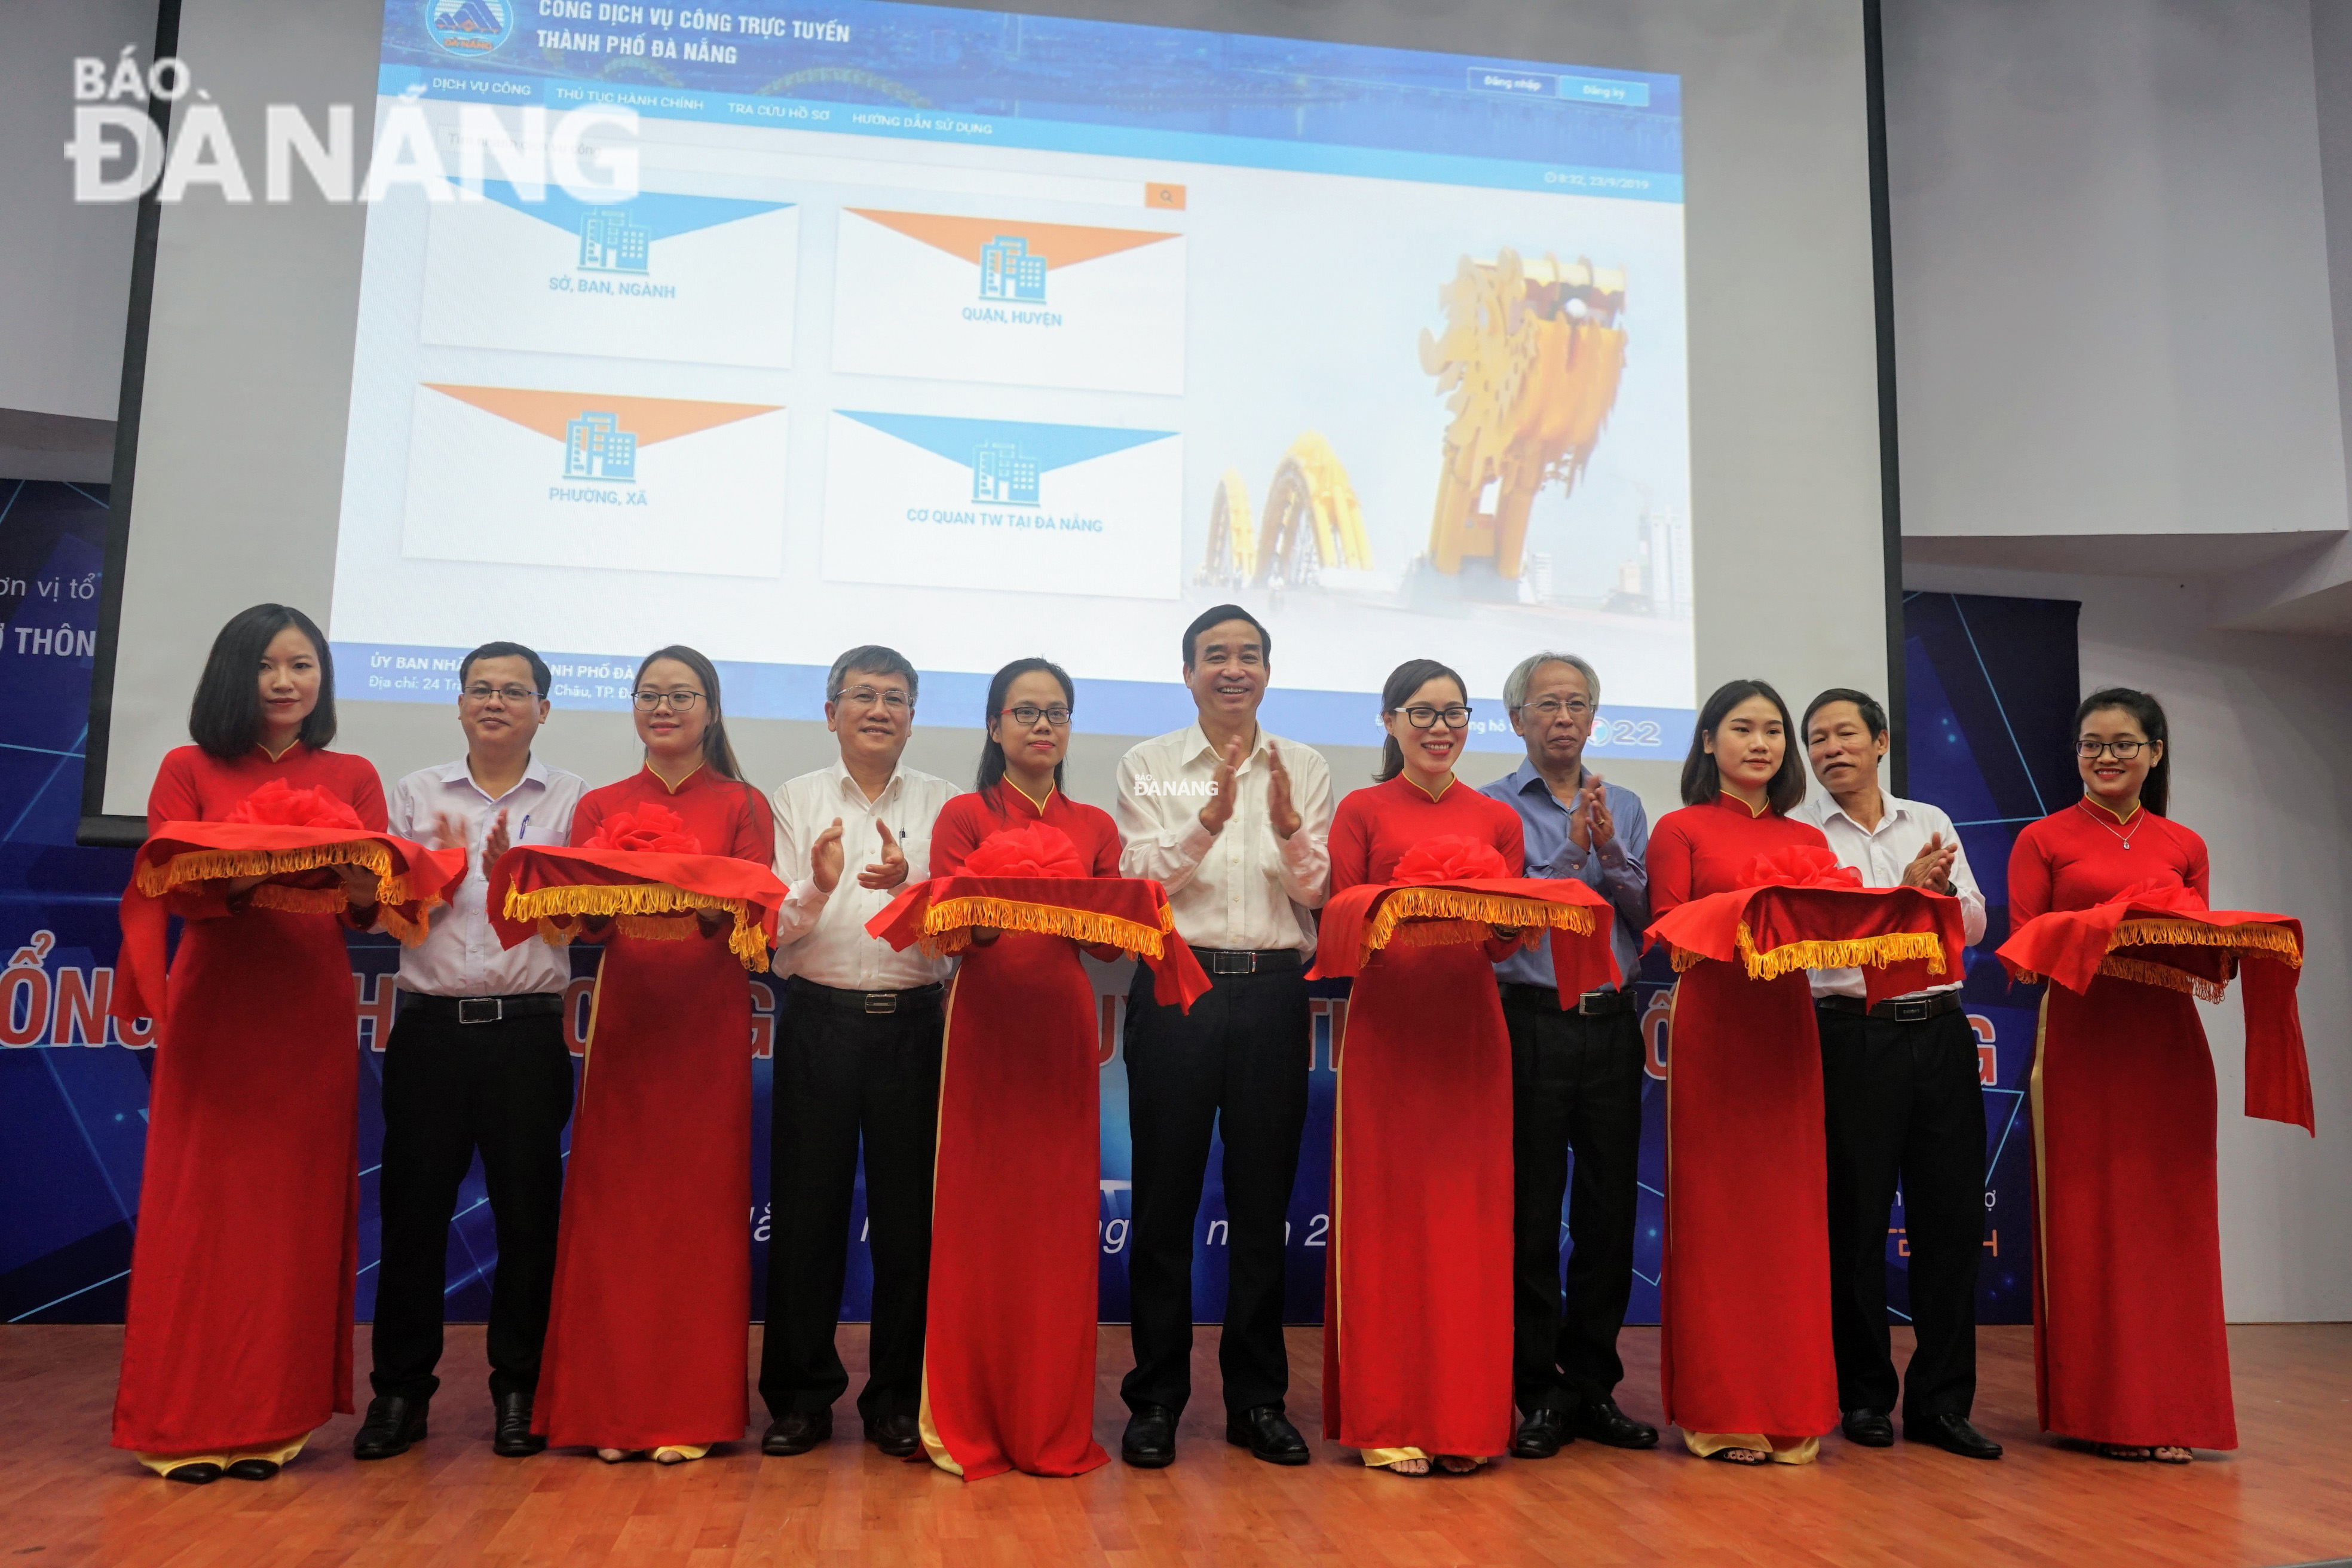 Phó Chủ tịch UBND thành phố Lê Trung Chinh cùng các đại biểu cắt băng khánh thành Cổng Dịch vụ công trực tuyến Đà Nẵng.